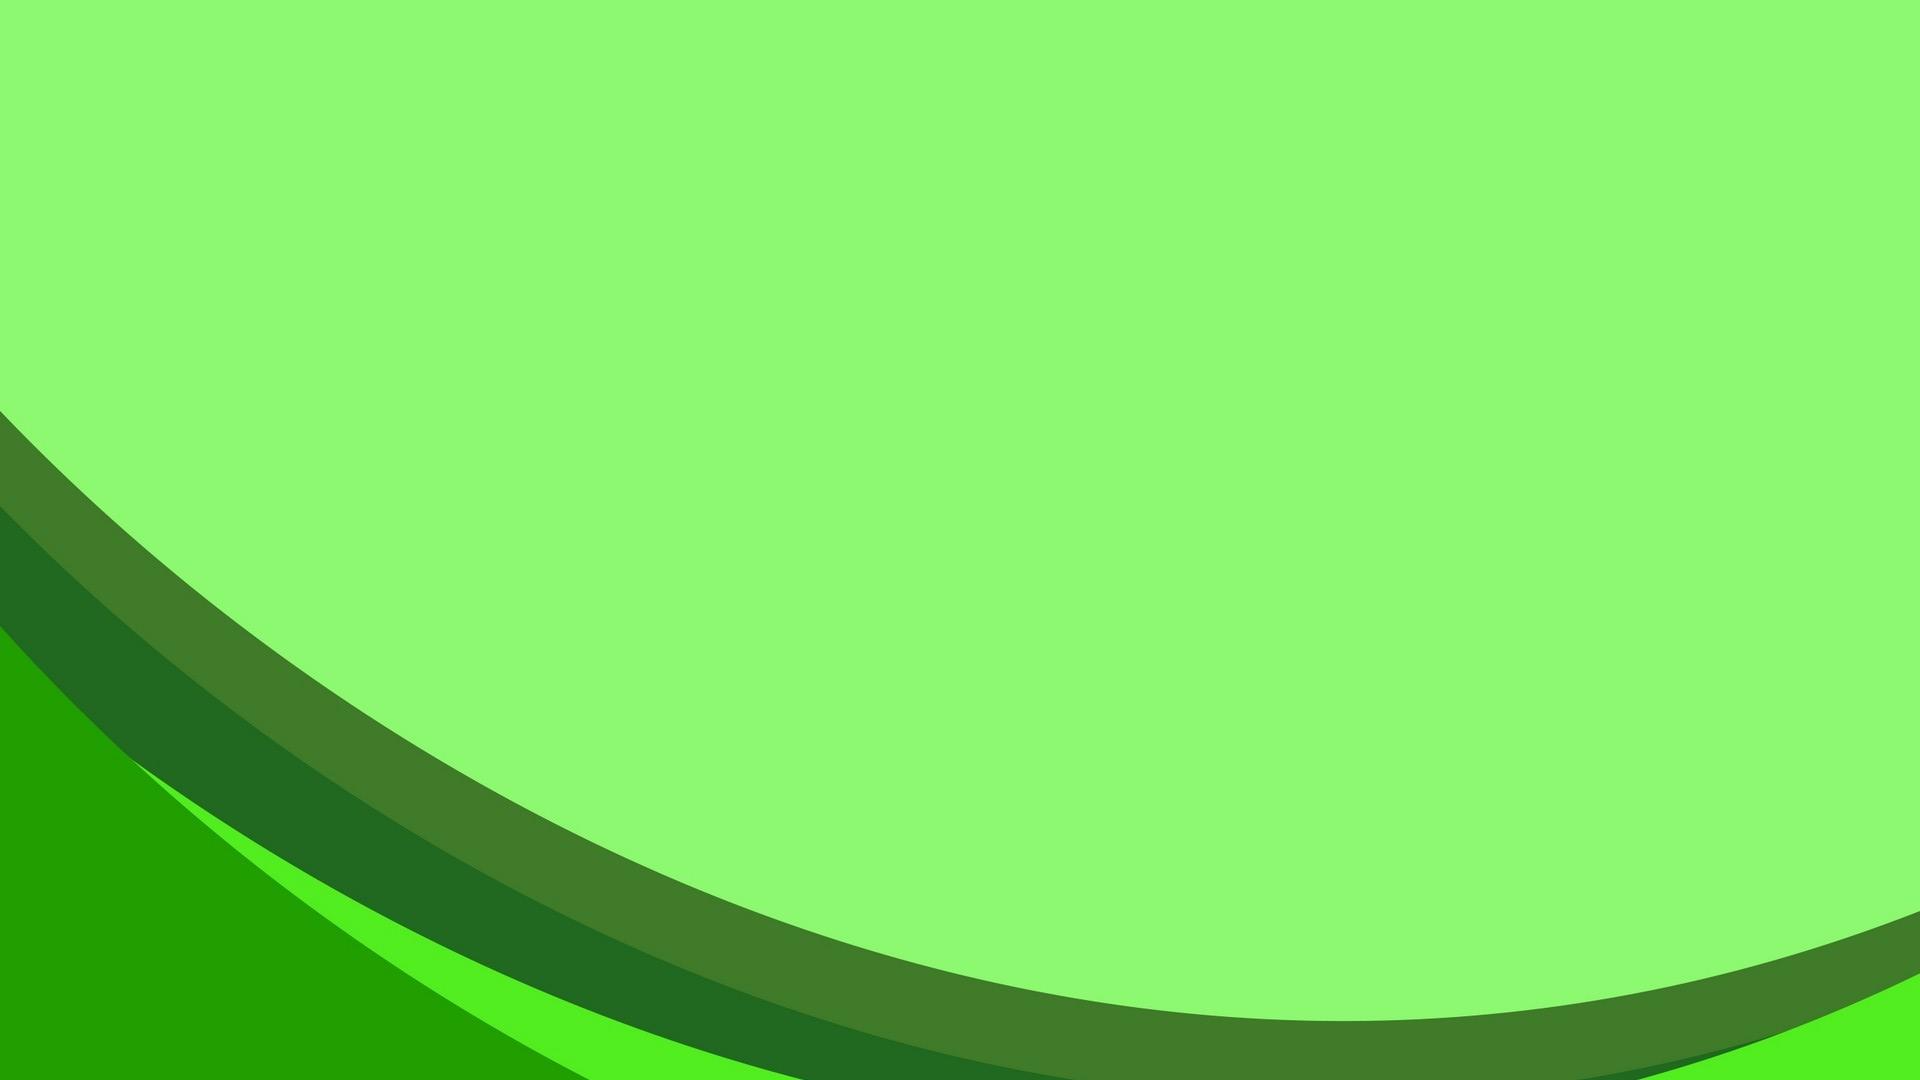 Tròn Màu Xanh Lá Cây Nền - Sáng màu xanh lá cây nền png tải về - Miễn phí  trong suốt Máy Tính Nền png Tải về.